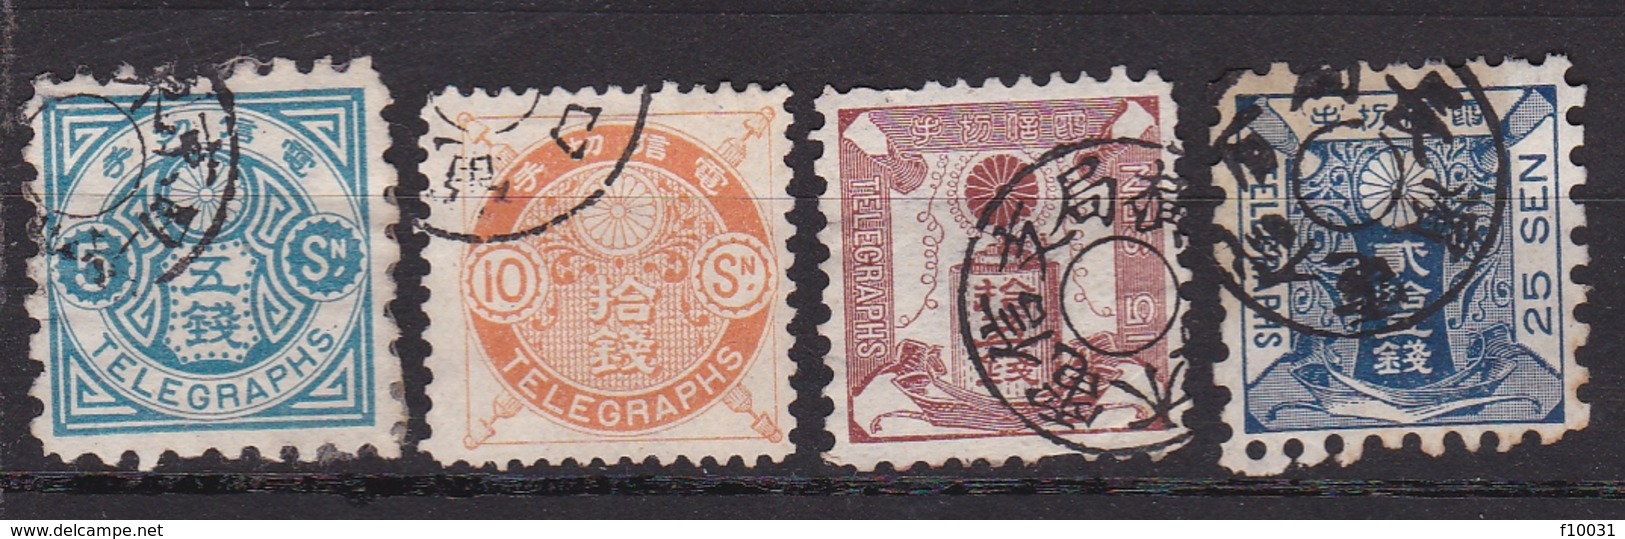 Japon Timbre Télégraphe N° 5-6-7-8 ° - Telegraph Stamps